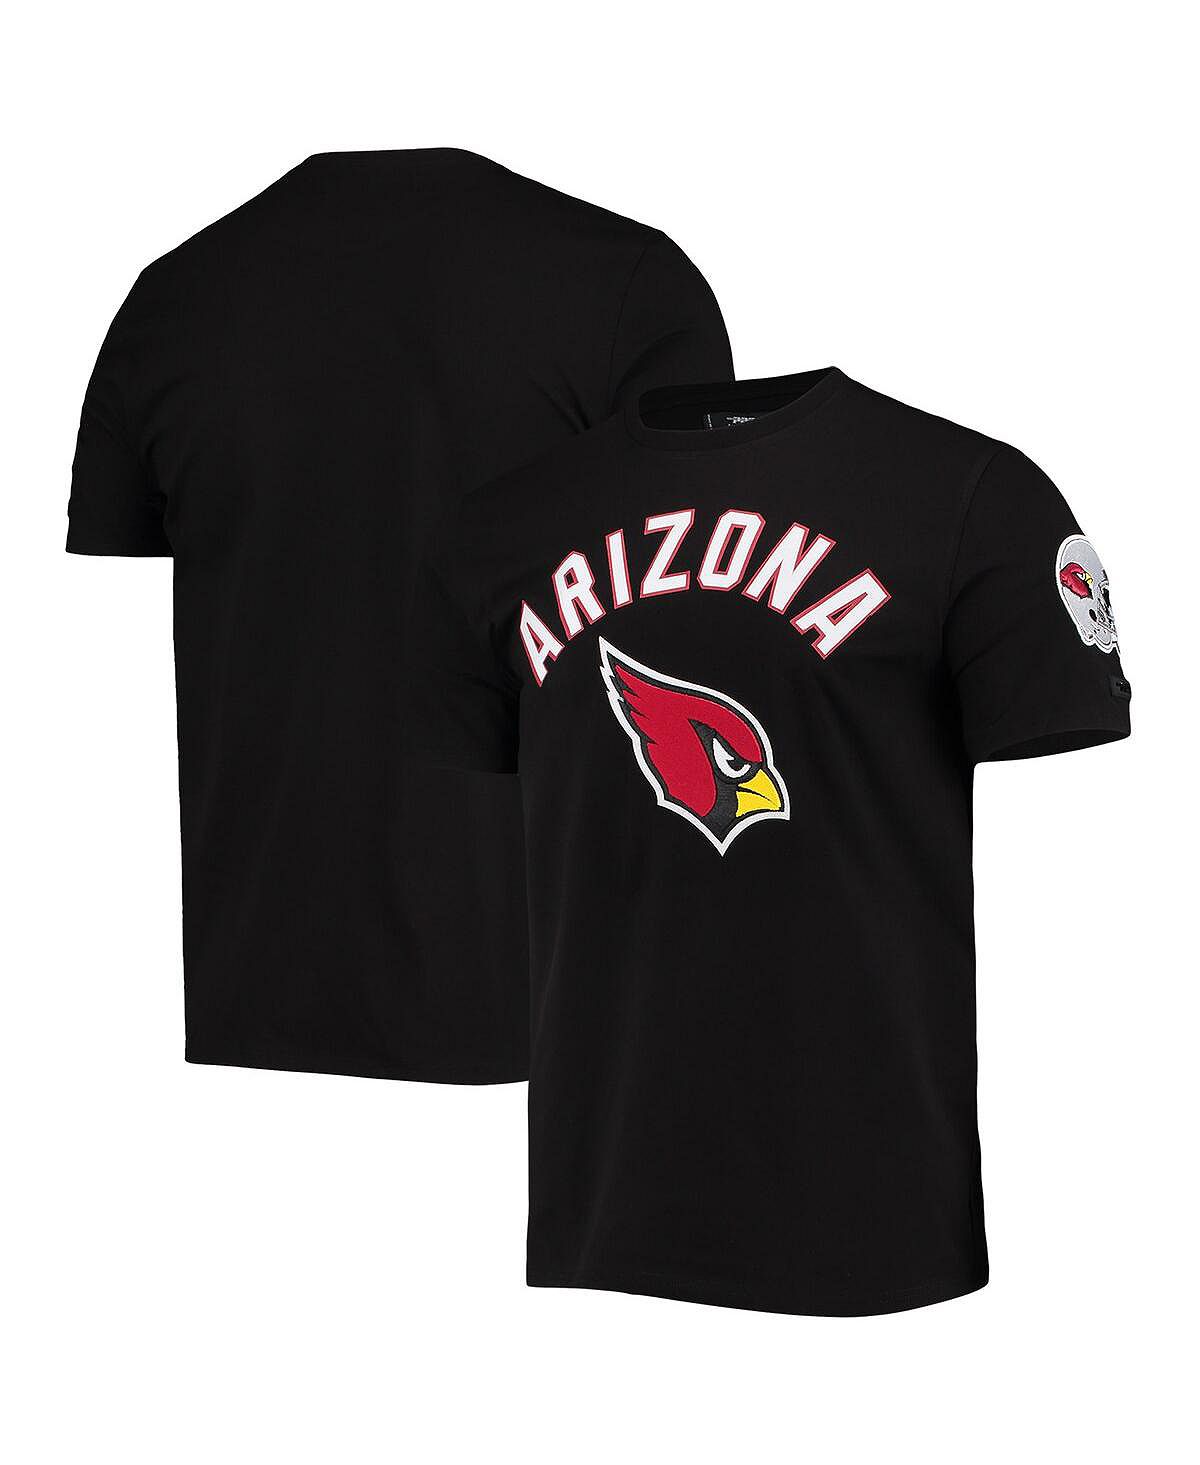 Мужская черная футболка arizona cardinals pro team Pro Standard, черный мужская двухцветная кепка с застежкой cardinal arizona cardinals черная pro standard